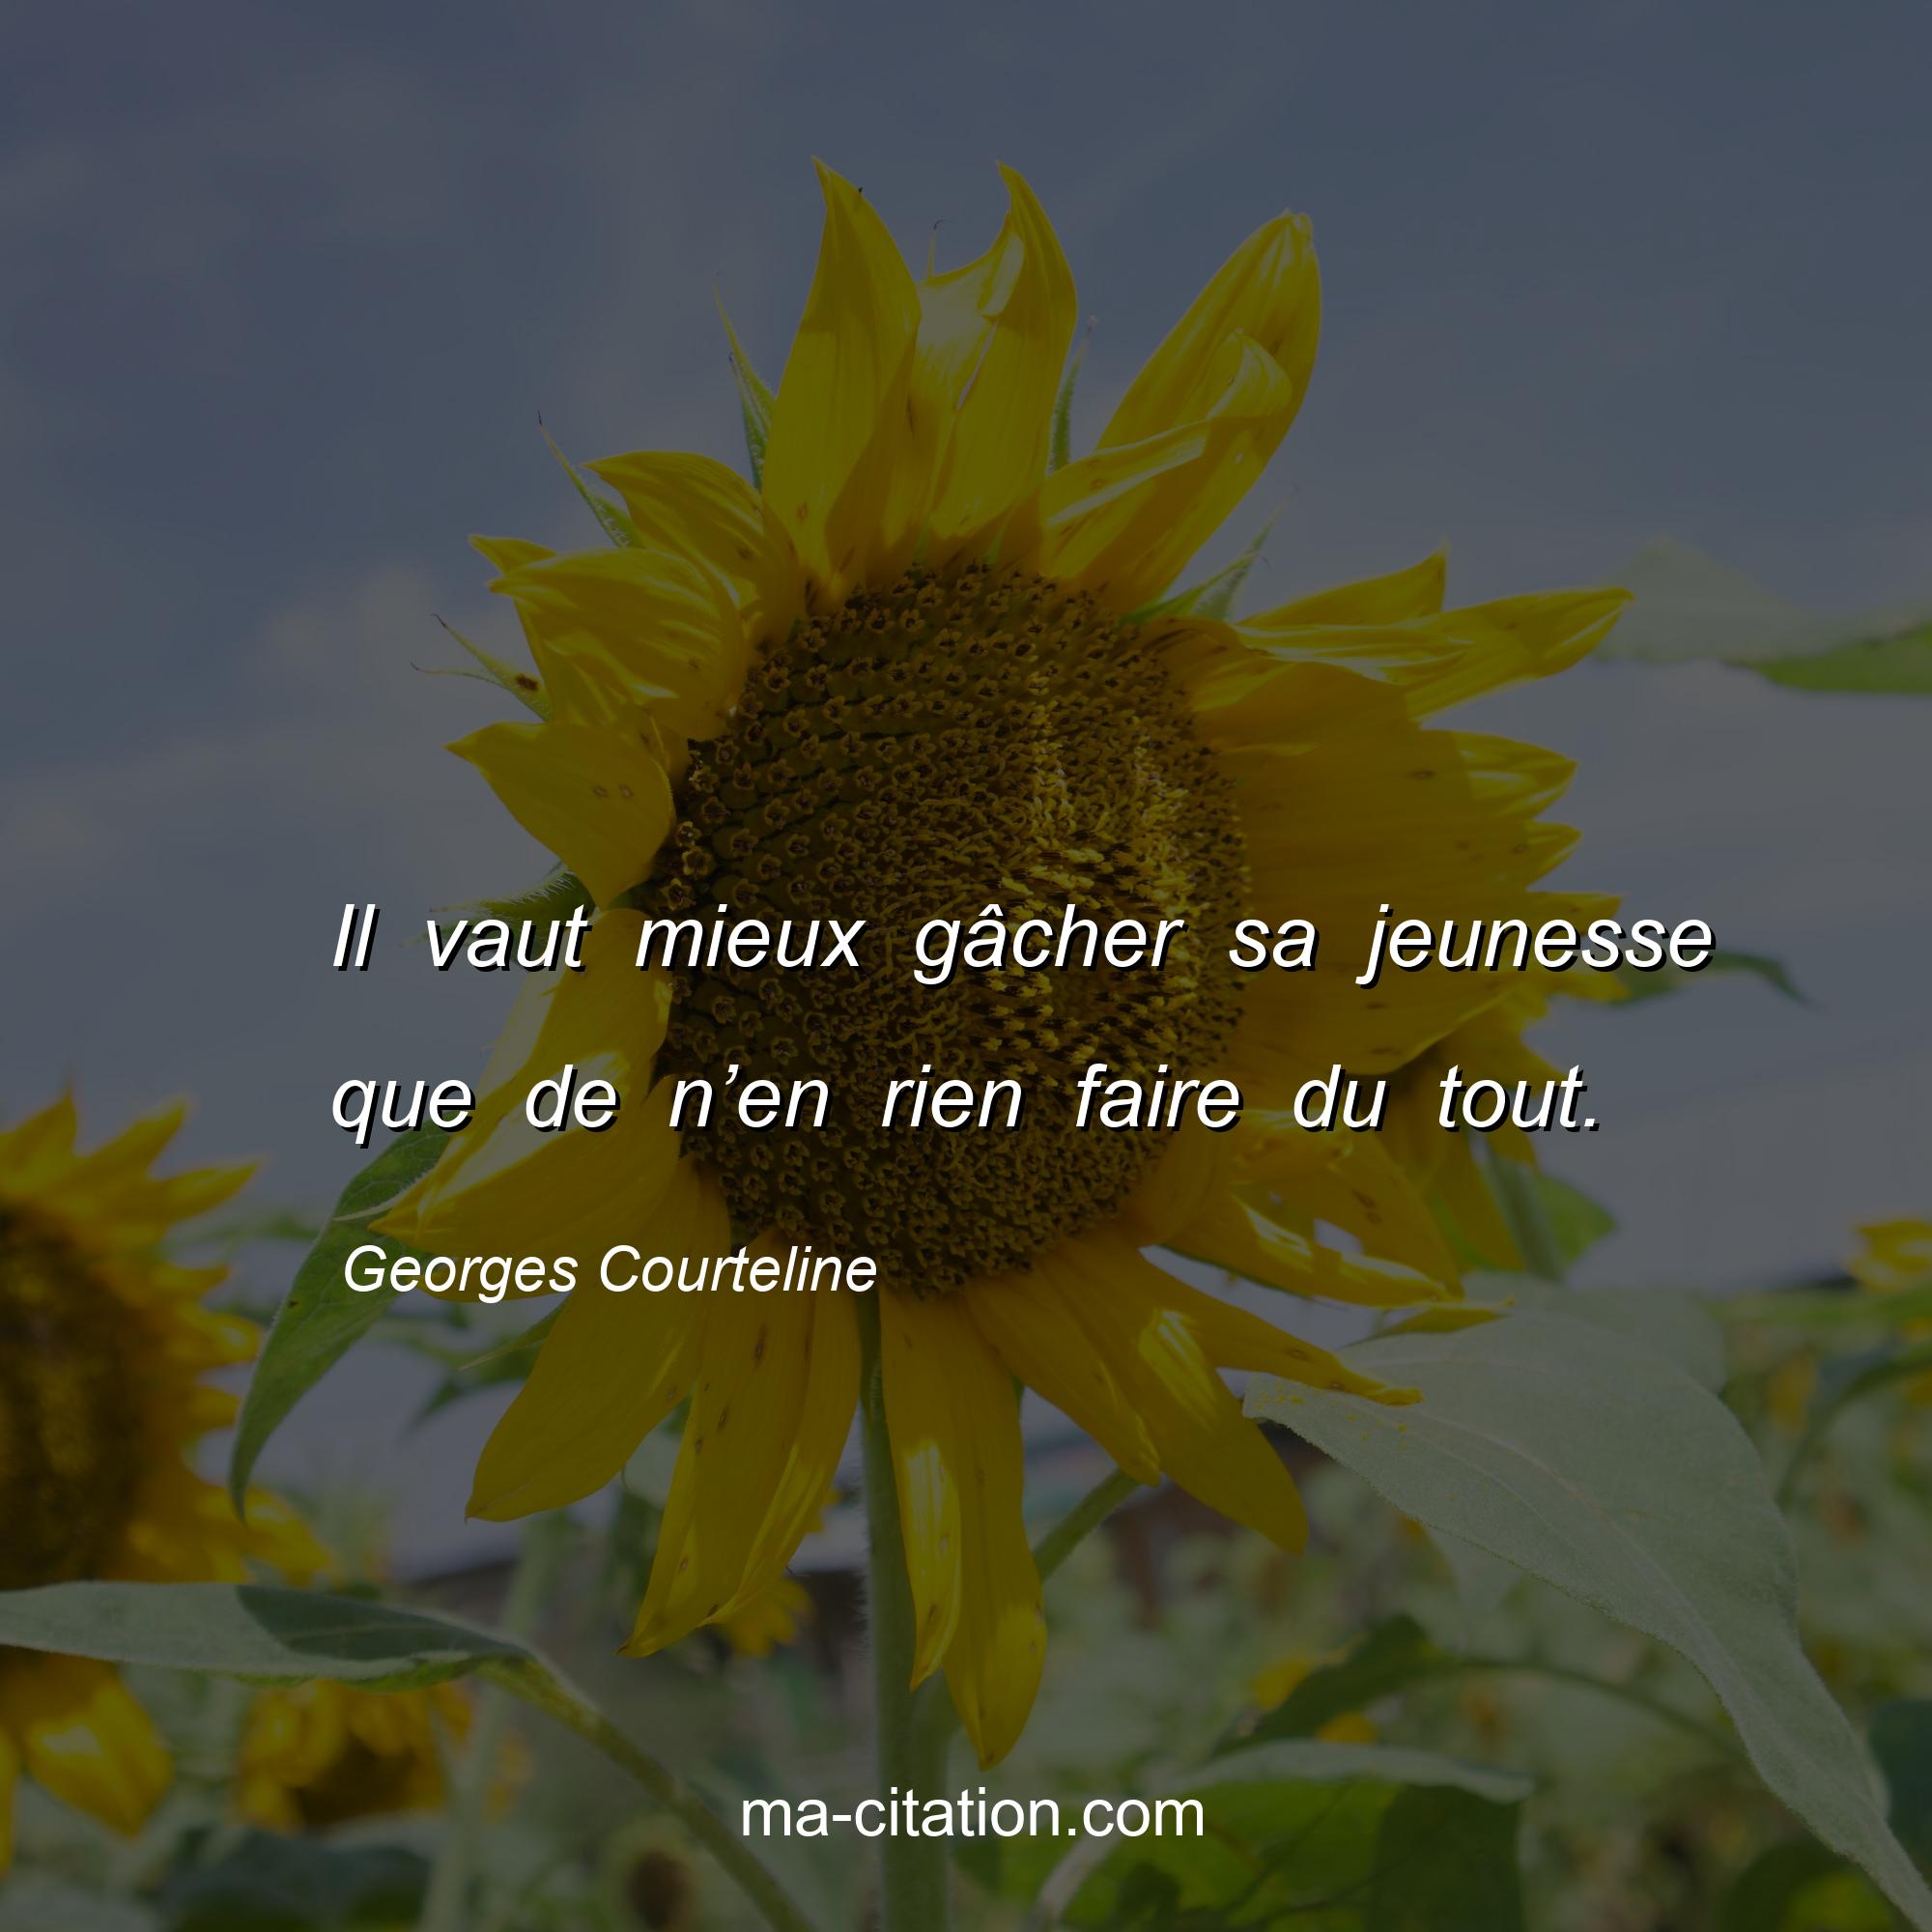 Georges Courteline : Il vaut mieux gâcher sa jeunesse que de n’en rien faire du tout.